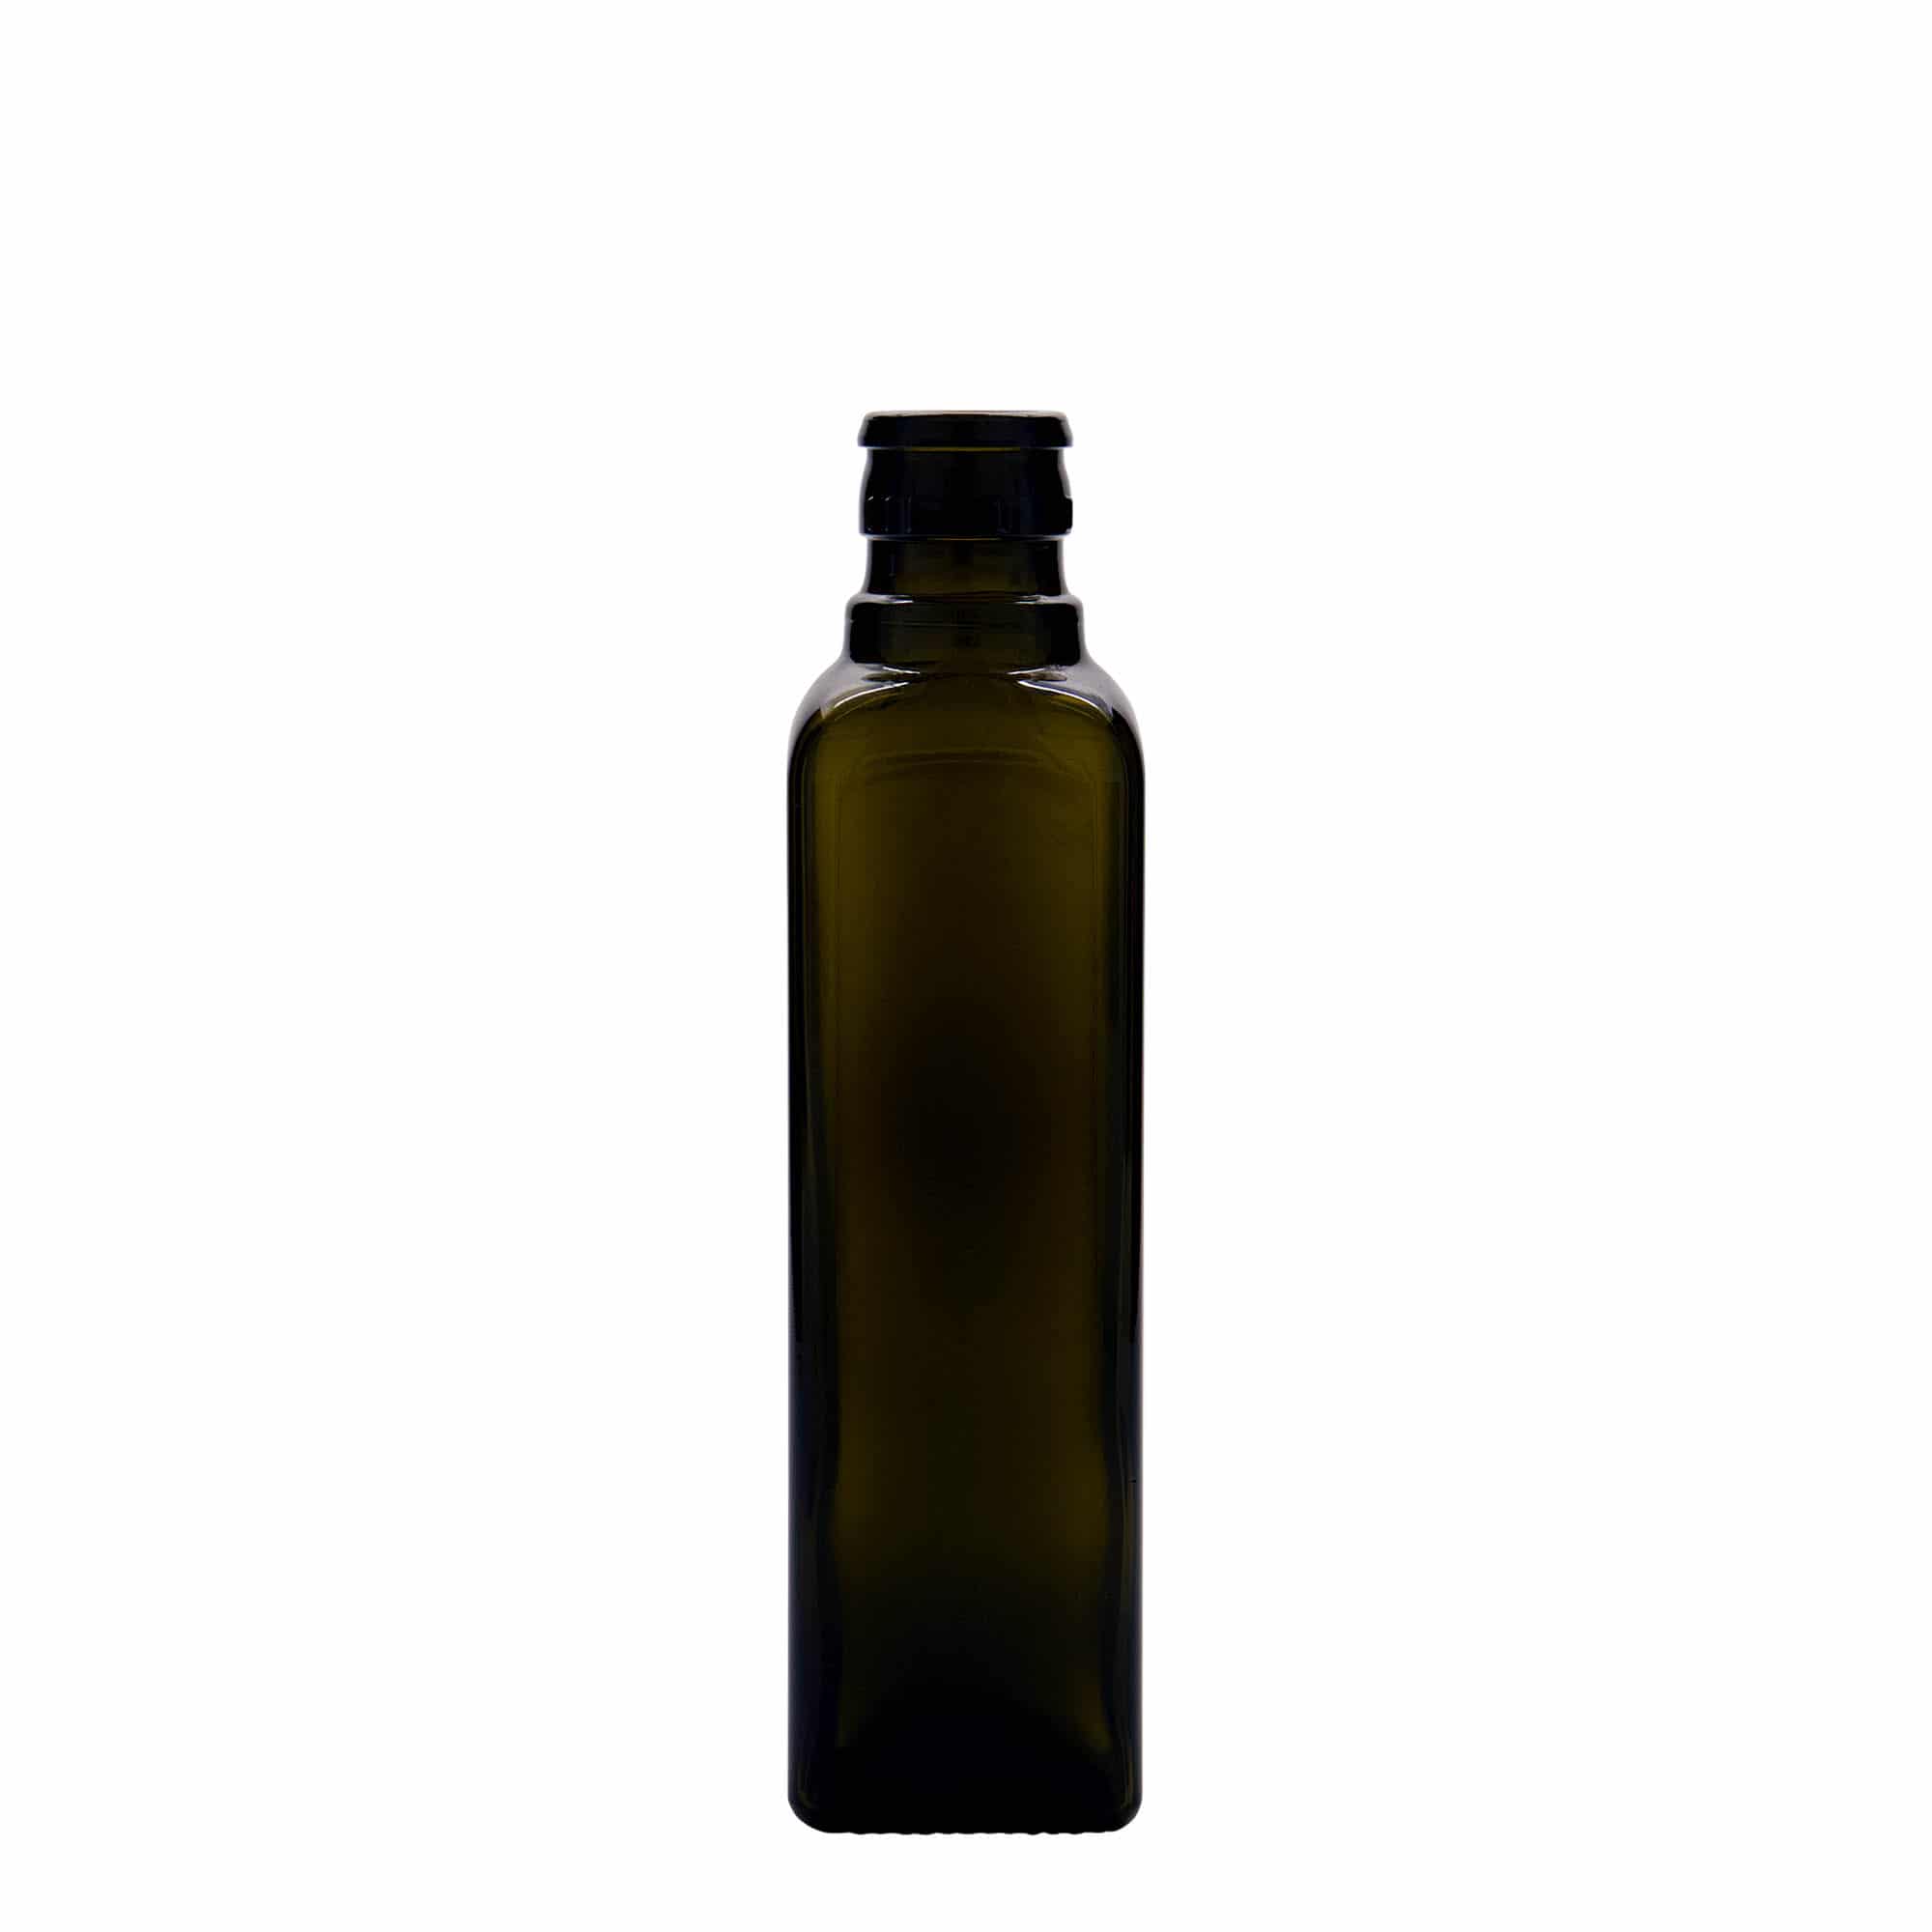 Azijn-/oliefles 'Quadra', 250 ml, glas, vierkant, antiekgroen, monding: DOP